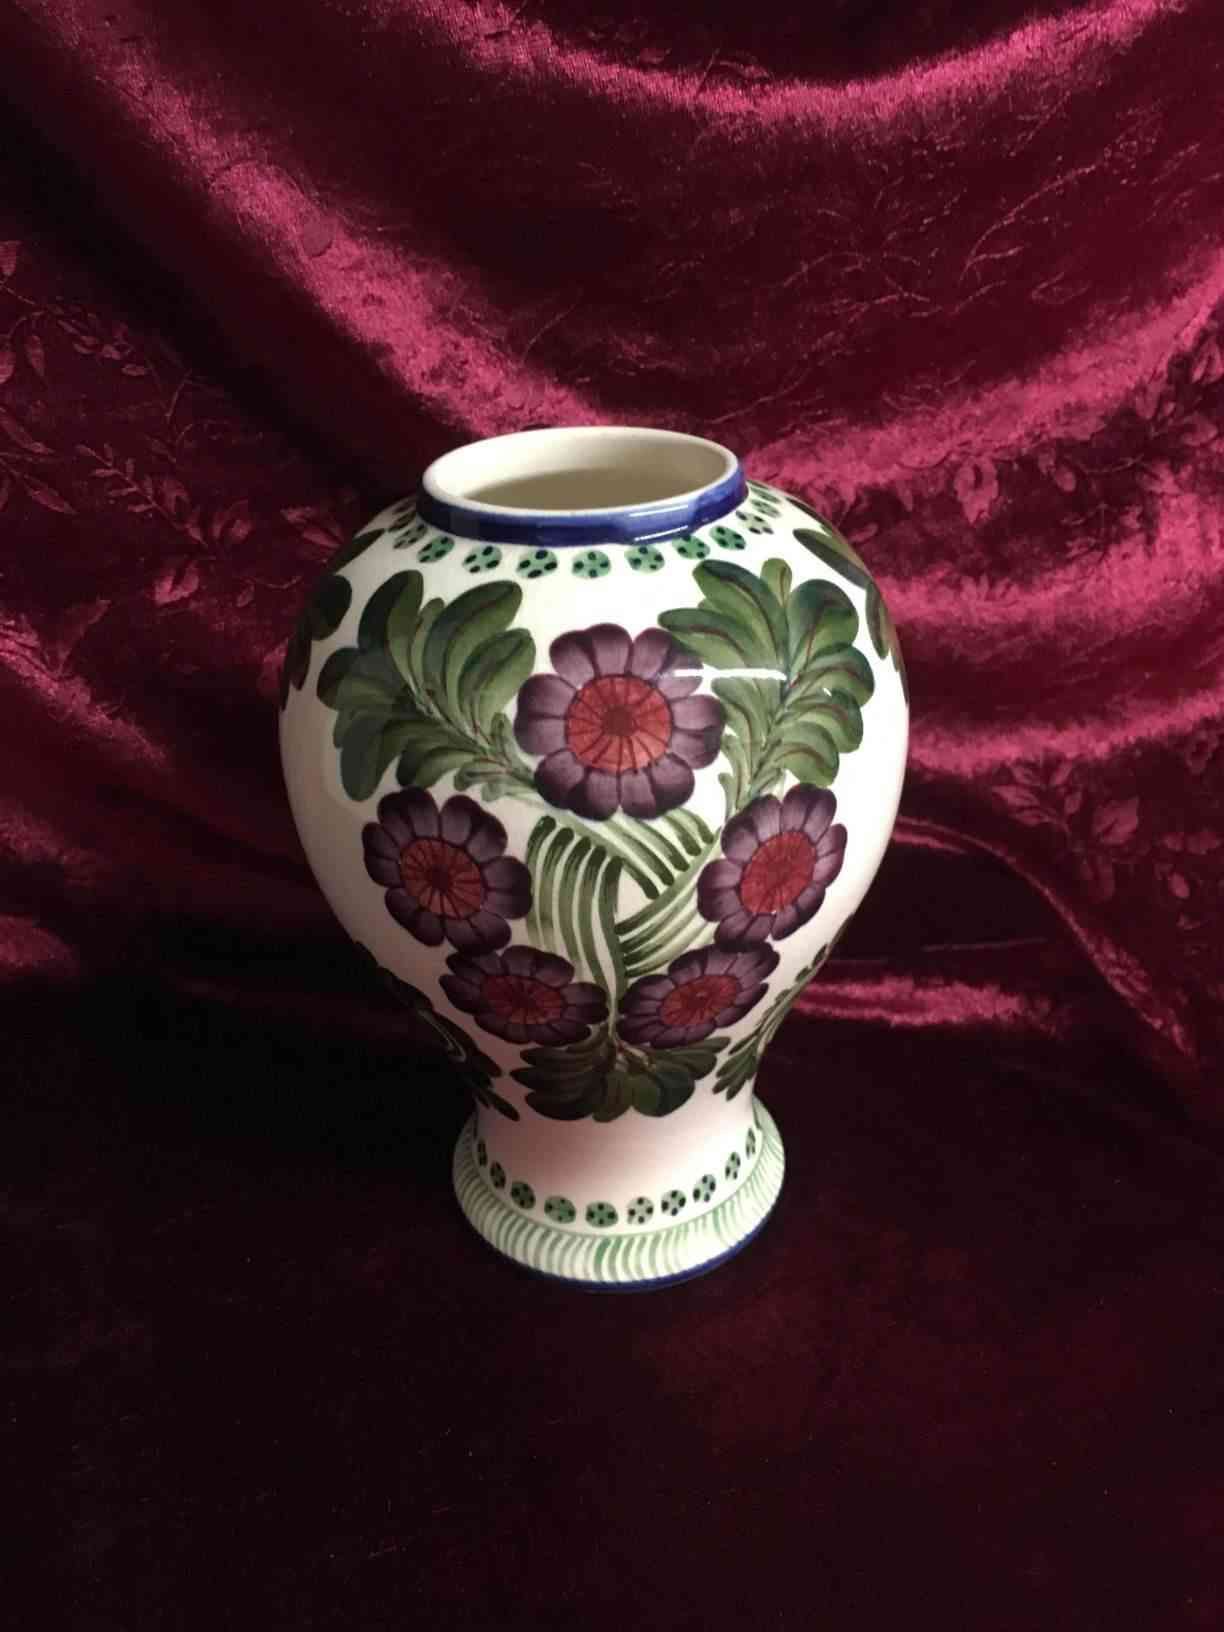 Aluminia -   Vase 438/394, formgivet af Harald Slott-Møller i 1905, dekoration ”Røde stråleblomster”, 17 cm høj, med reparation. Pris: 450,- Kr.